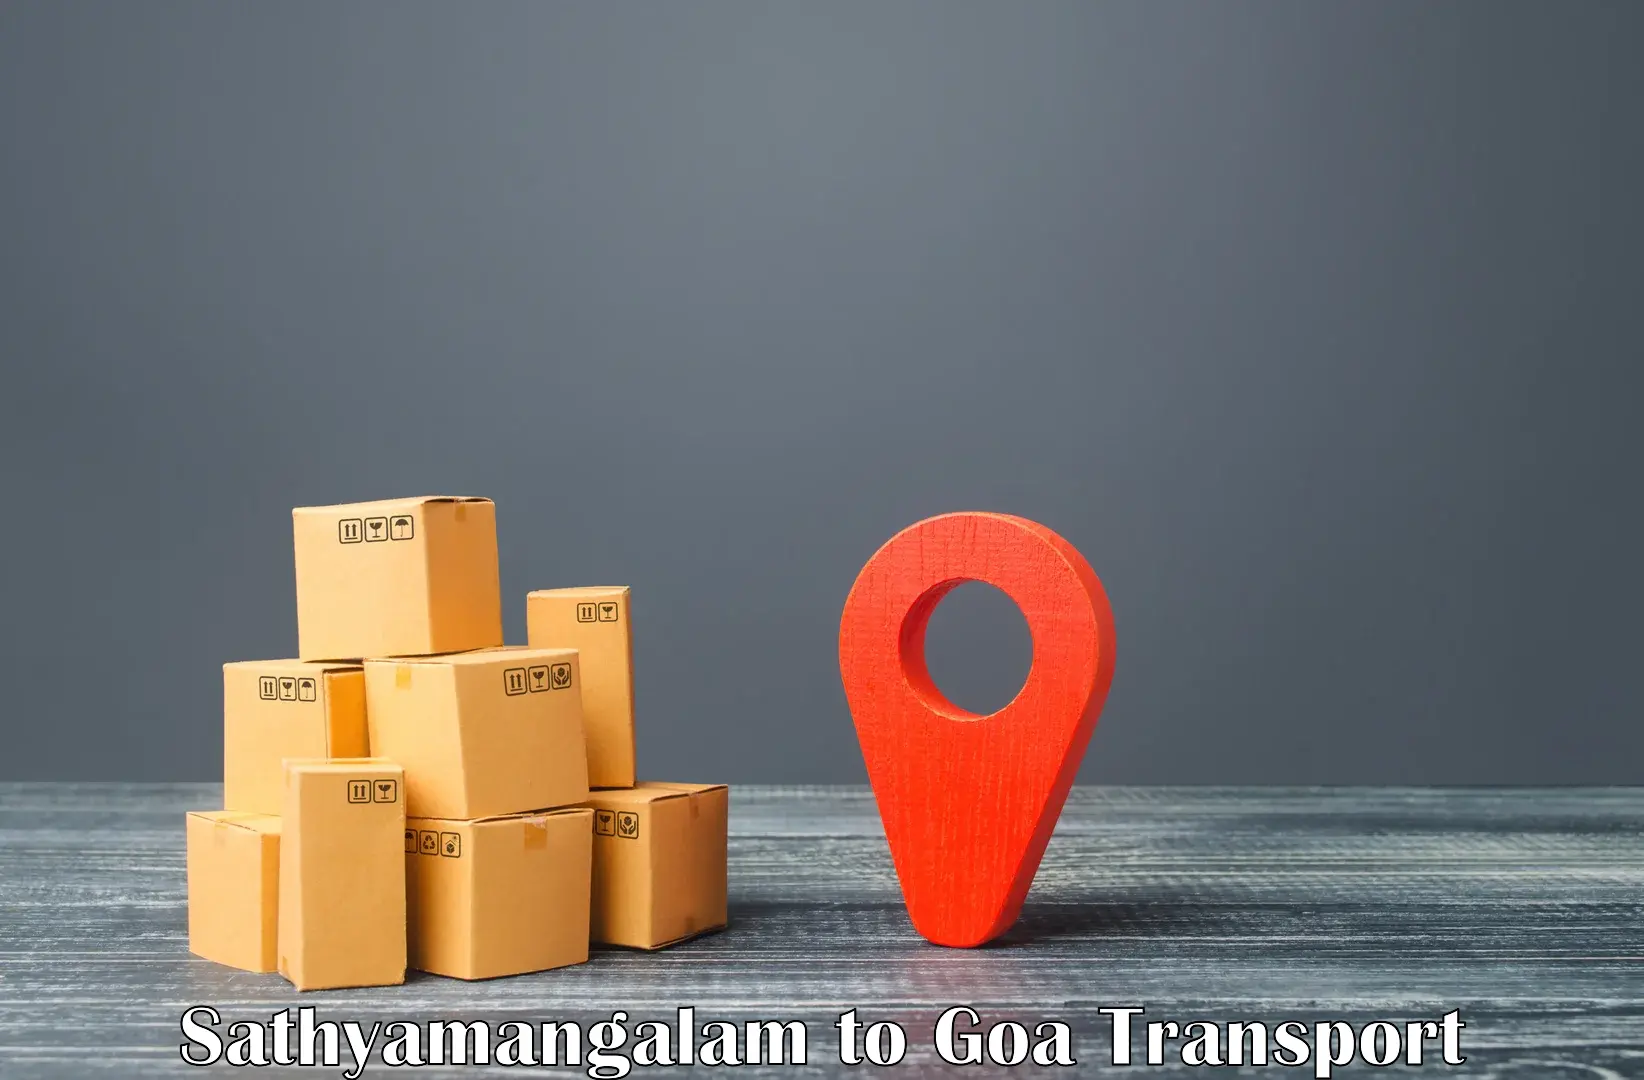 Nearest transport service Sathyamangalam to Mormugao Port